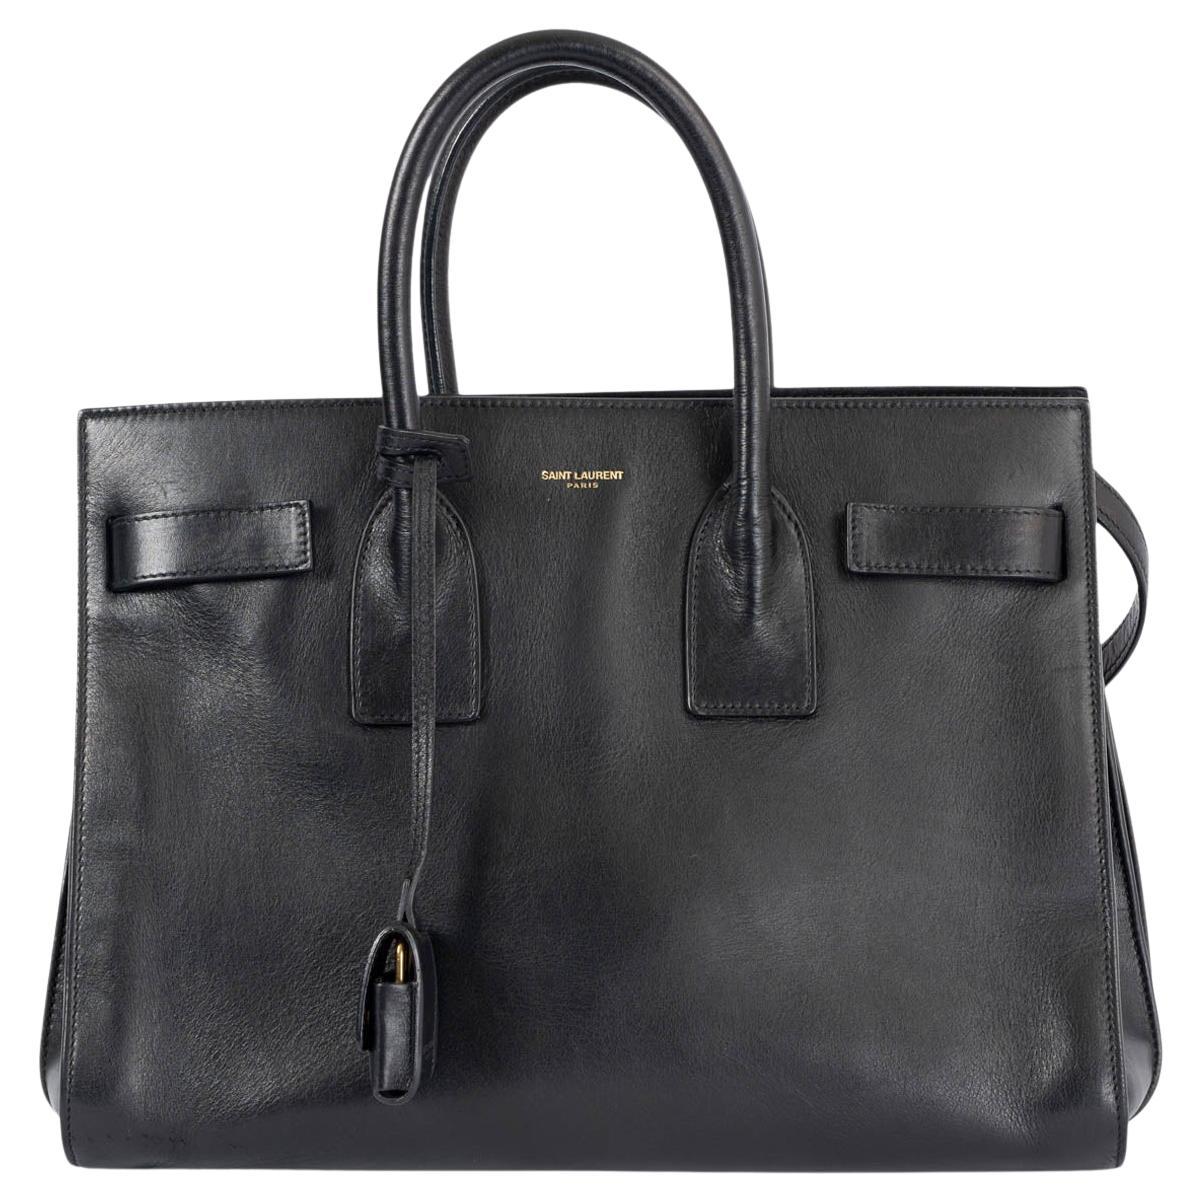 SAINT LAURENT black leather SMALL SAC DE JOUR Tote Bag